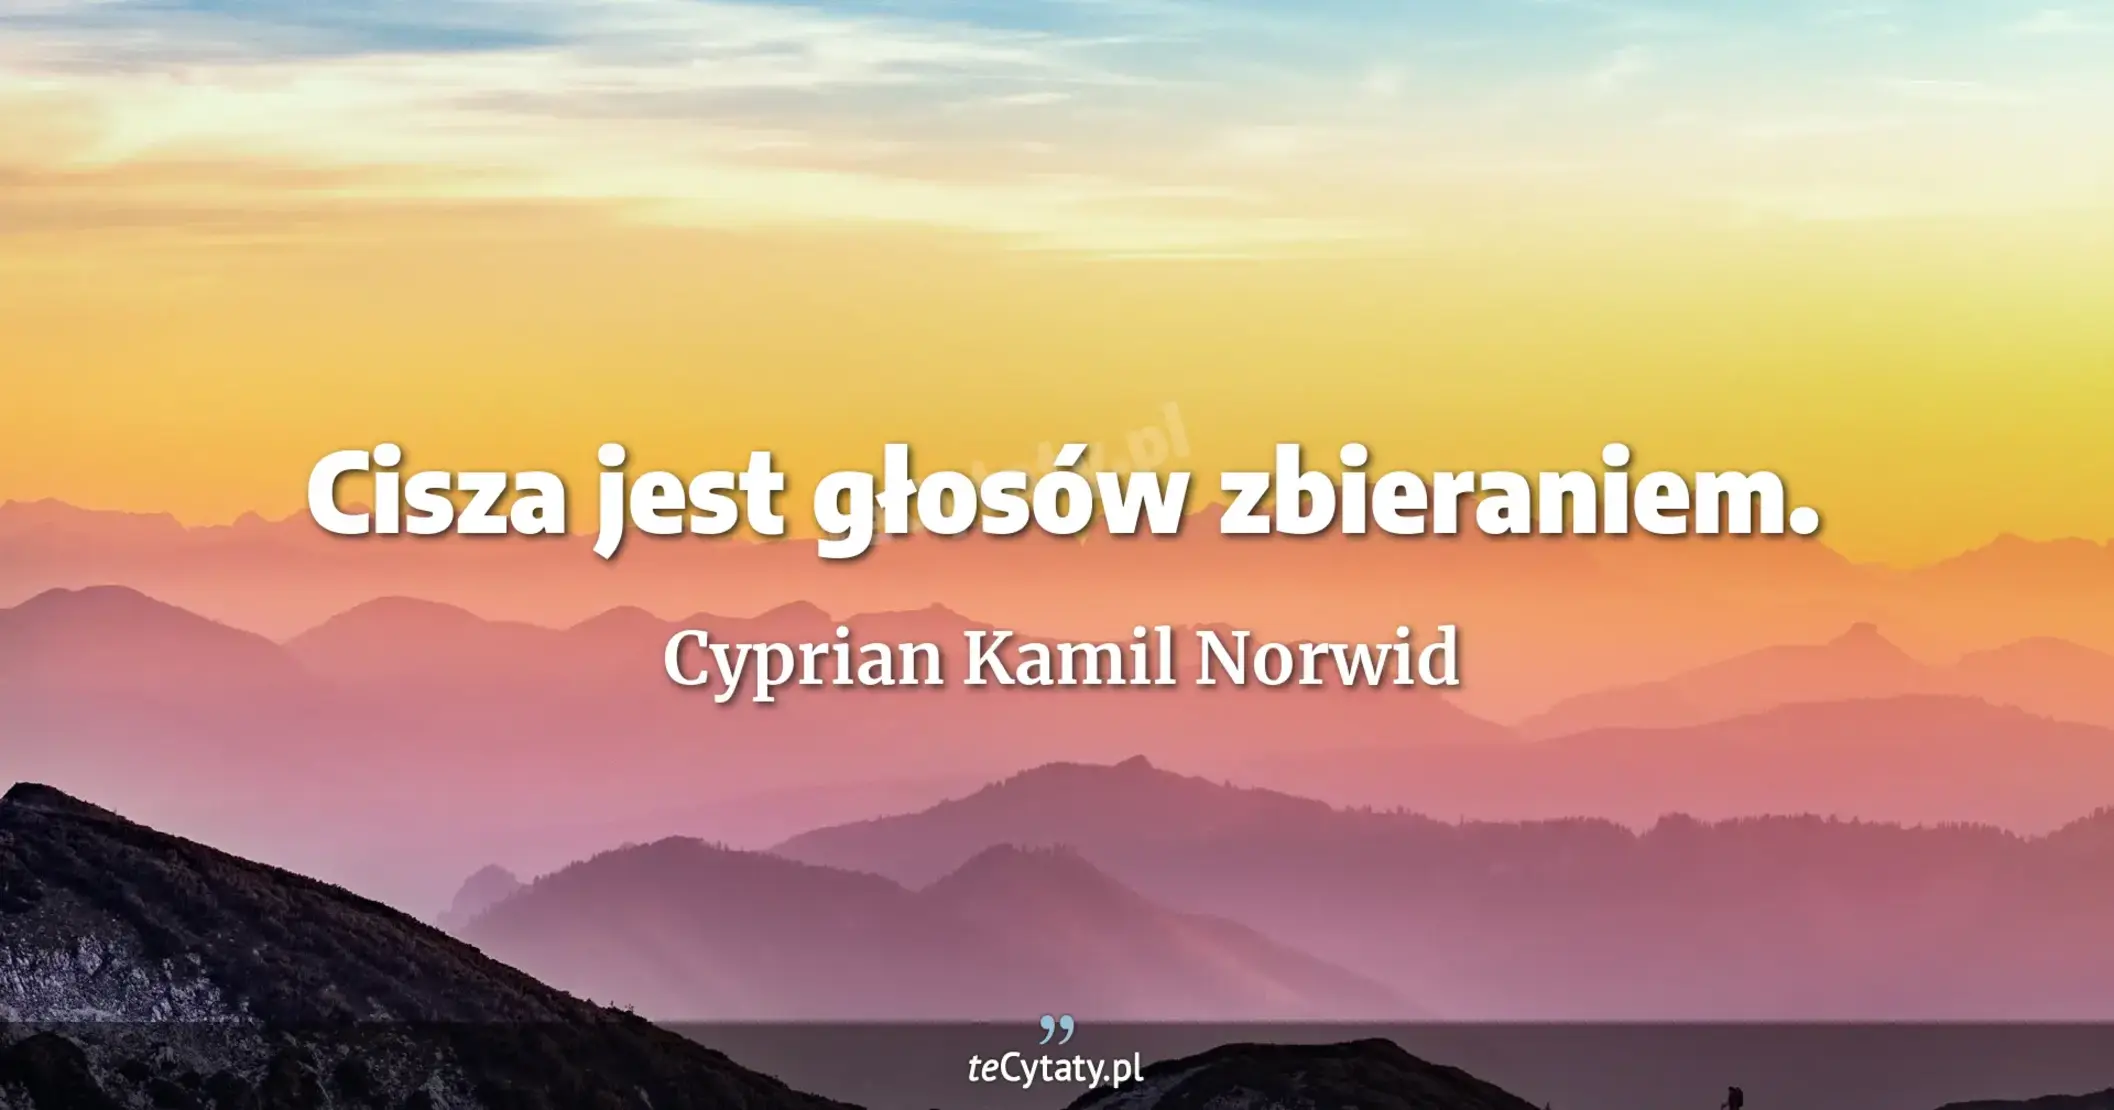 Cisza jest głosów zbieraniem. - Cyprian Kamil Norwid